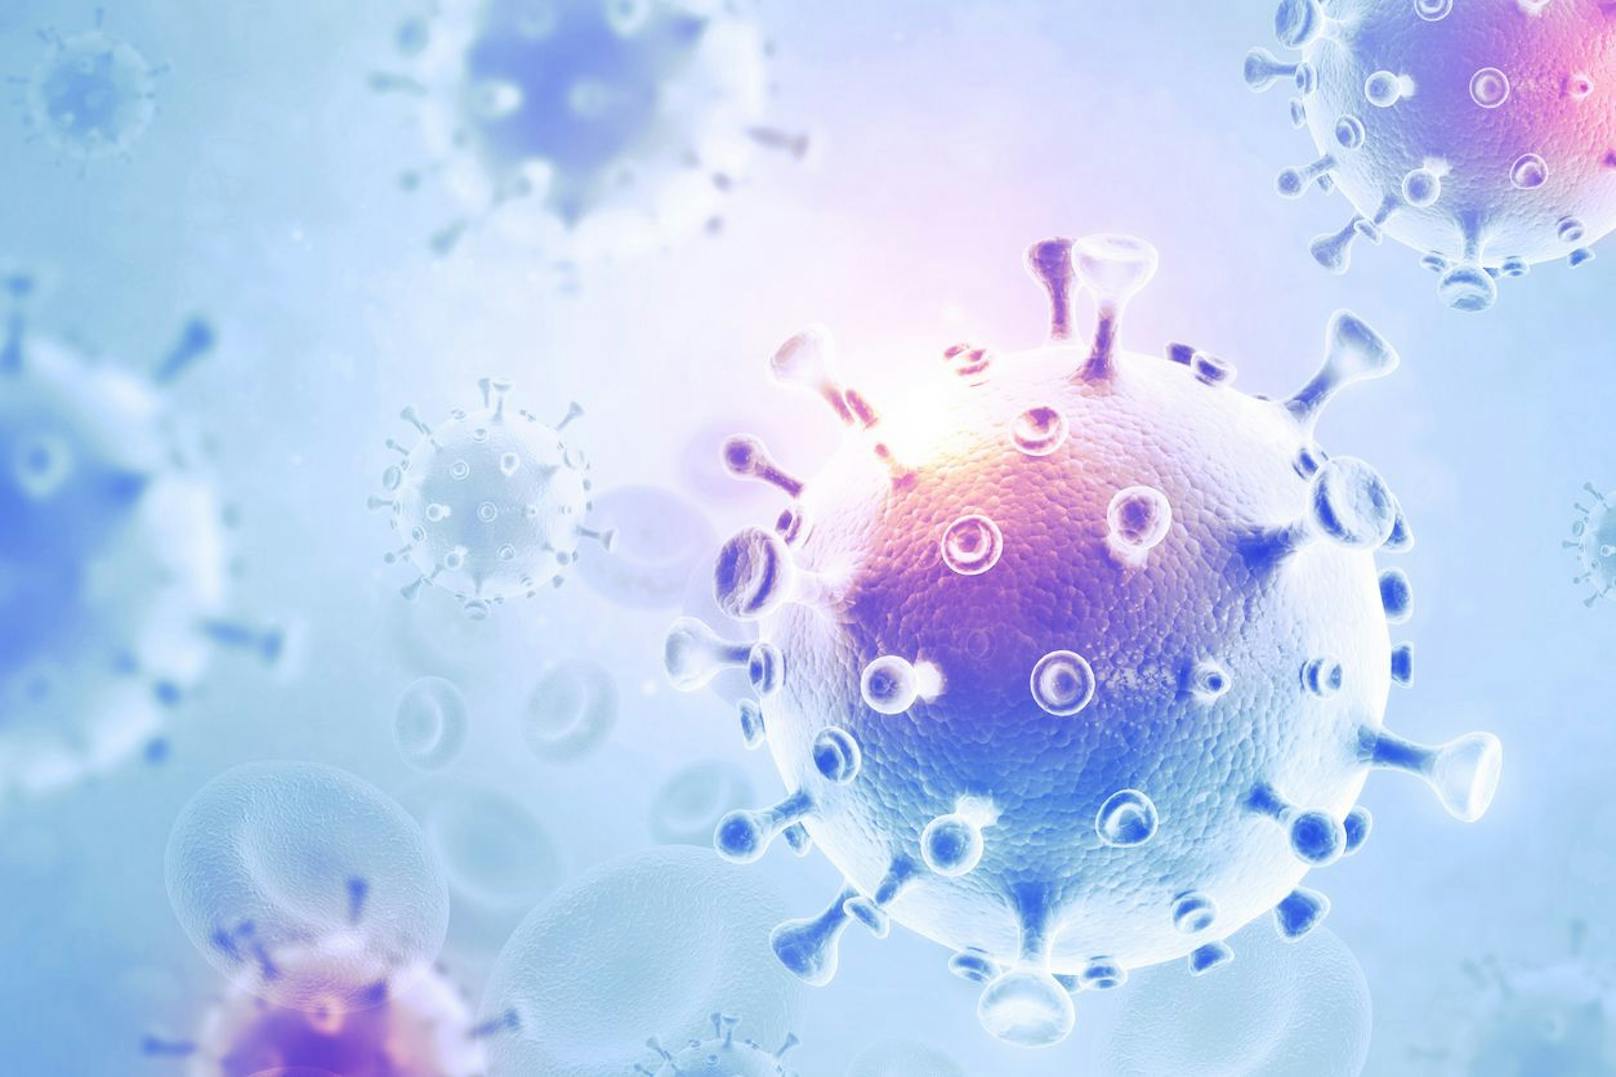 Das HIV-Virus eröffnet dem Coronavirus weitere Mutationsmöglichkeiten.